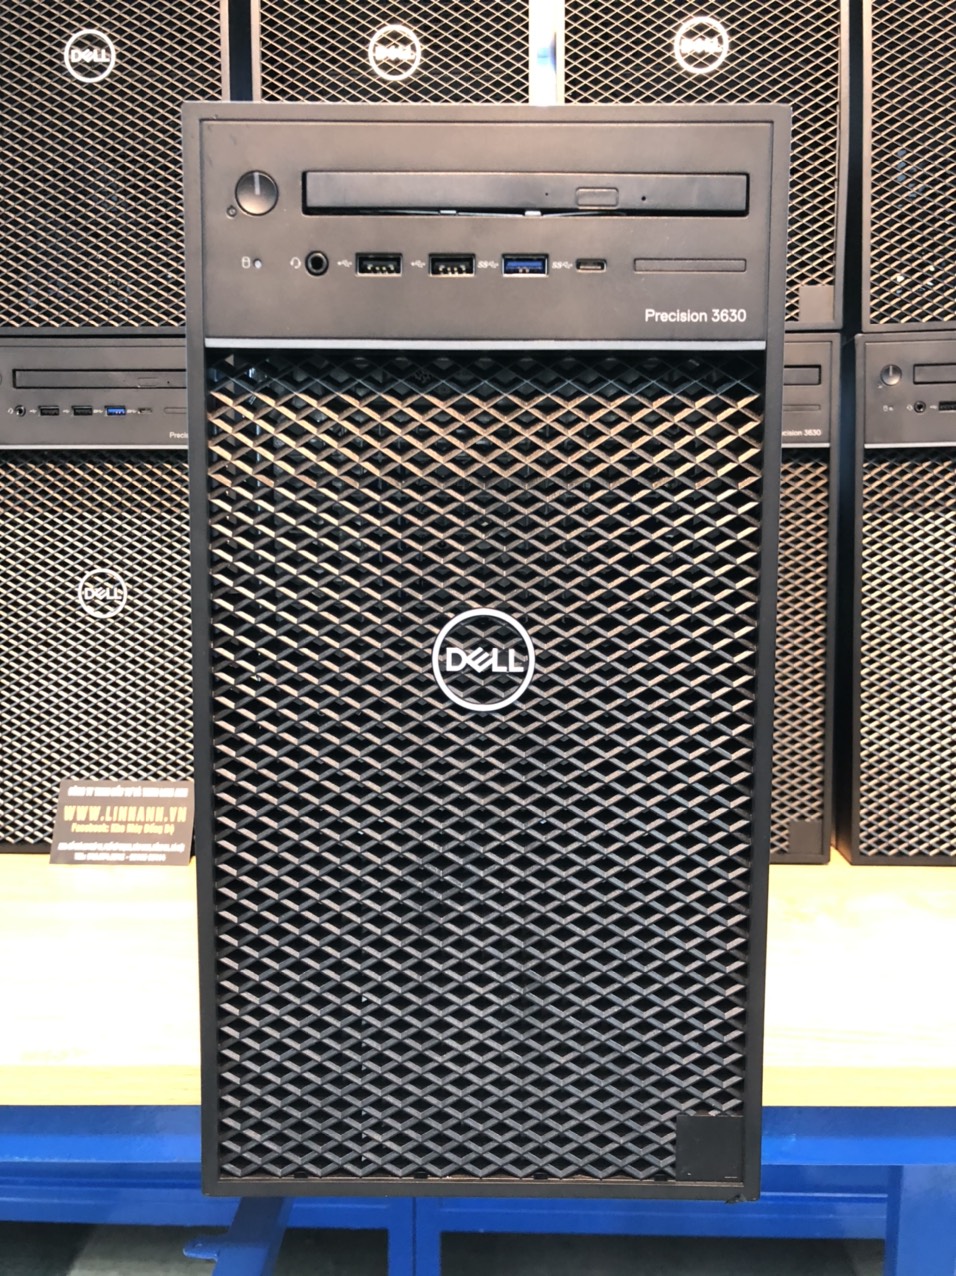 Dell Precision 3630 (01)